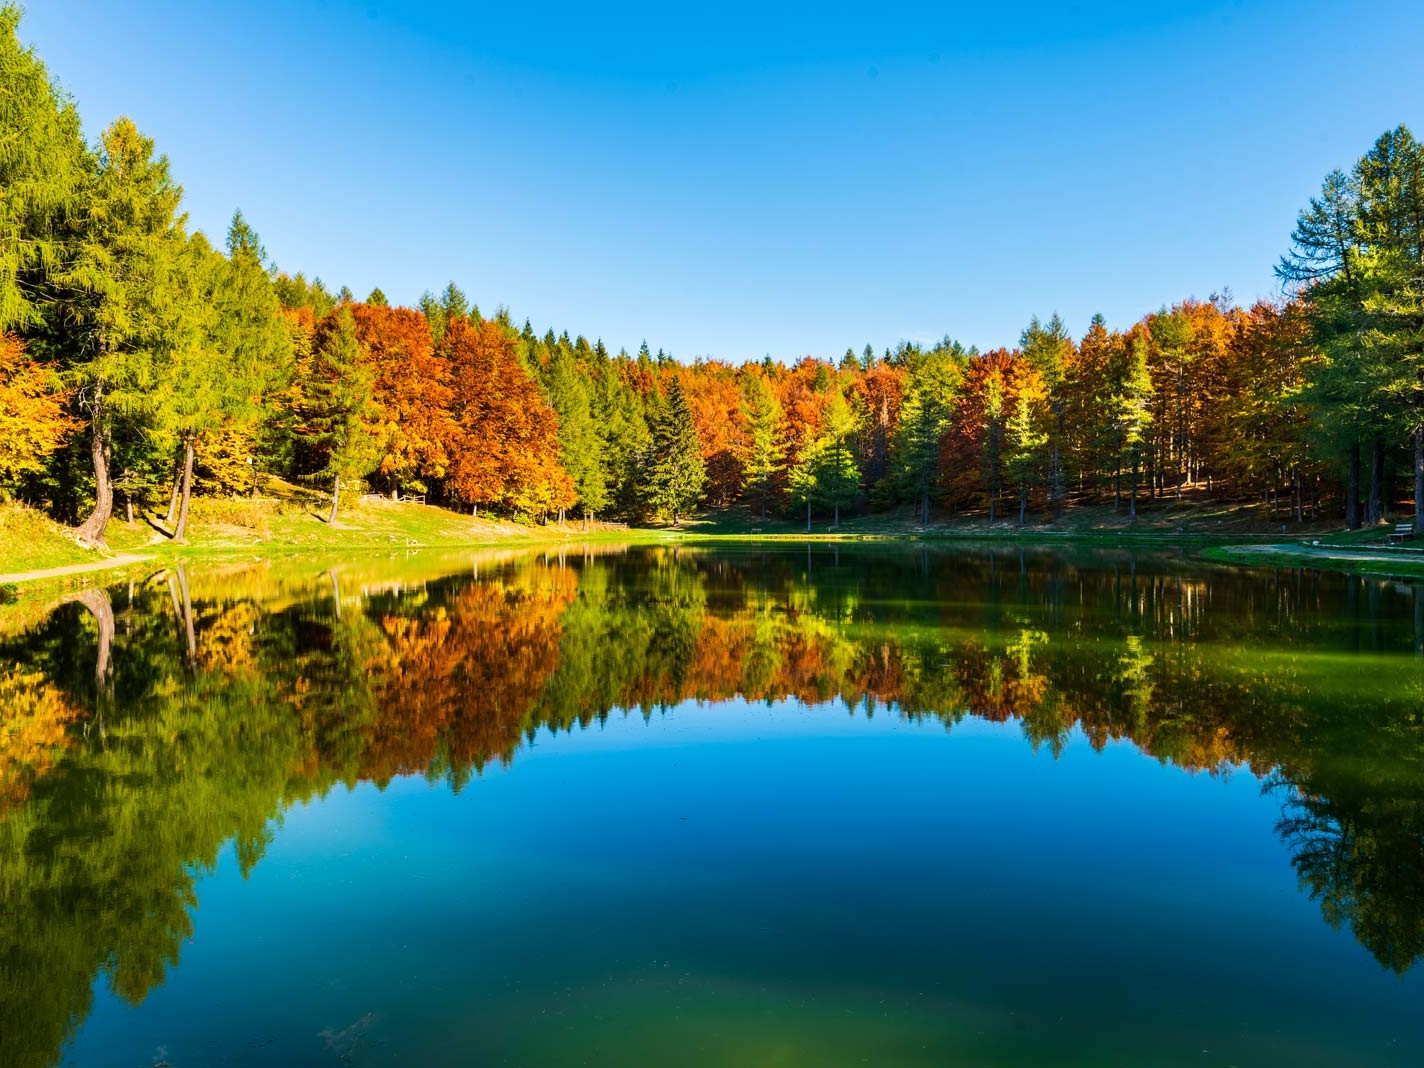 Lago della ninfa sestola autunno